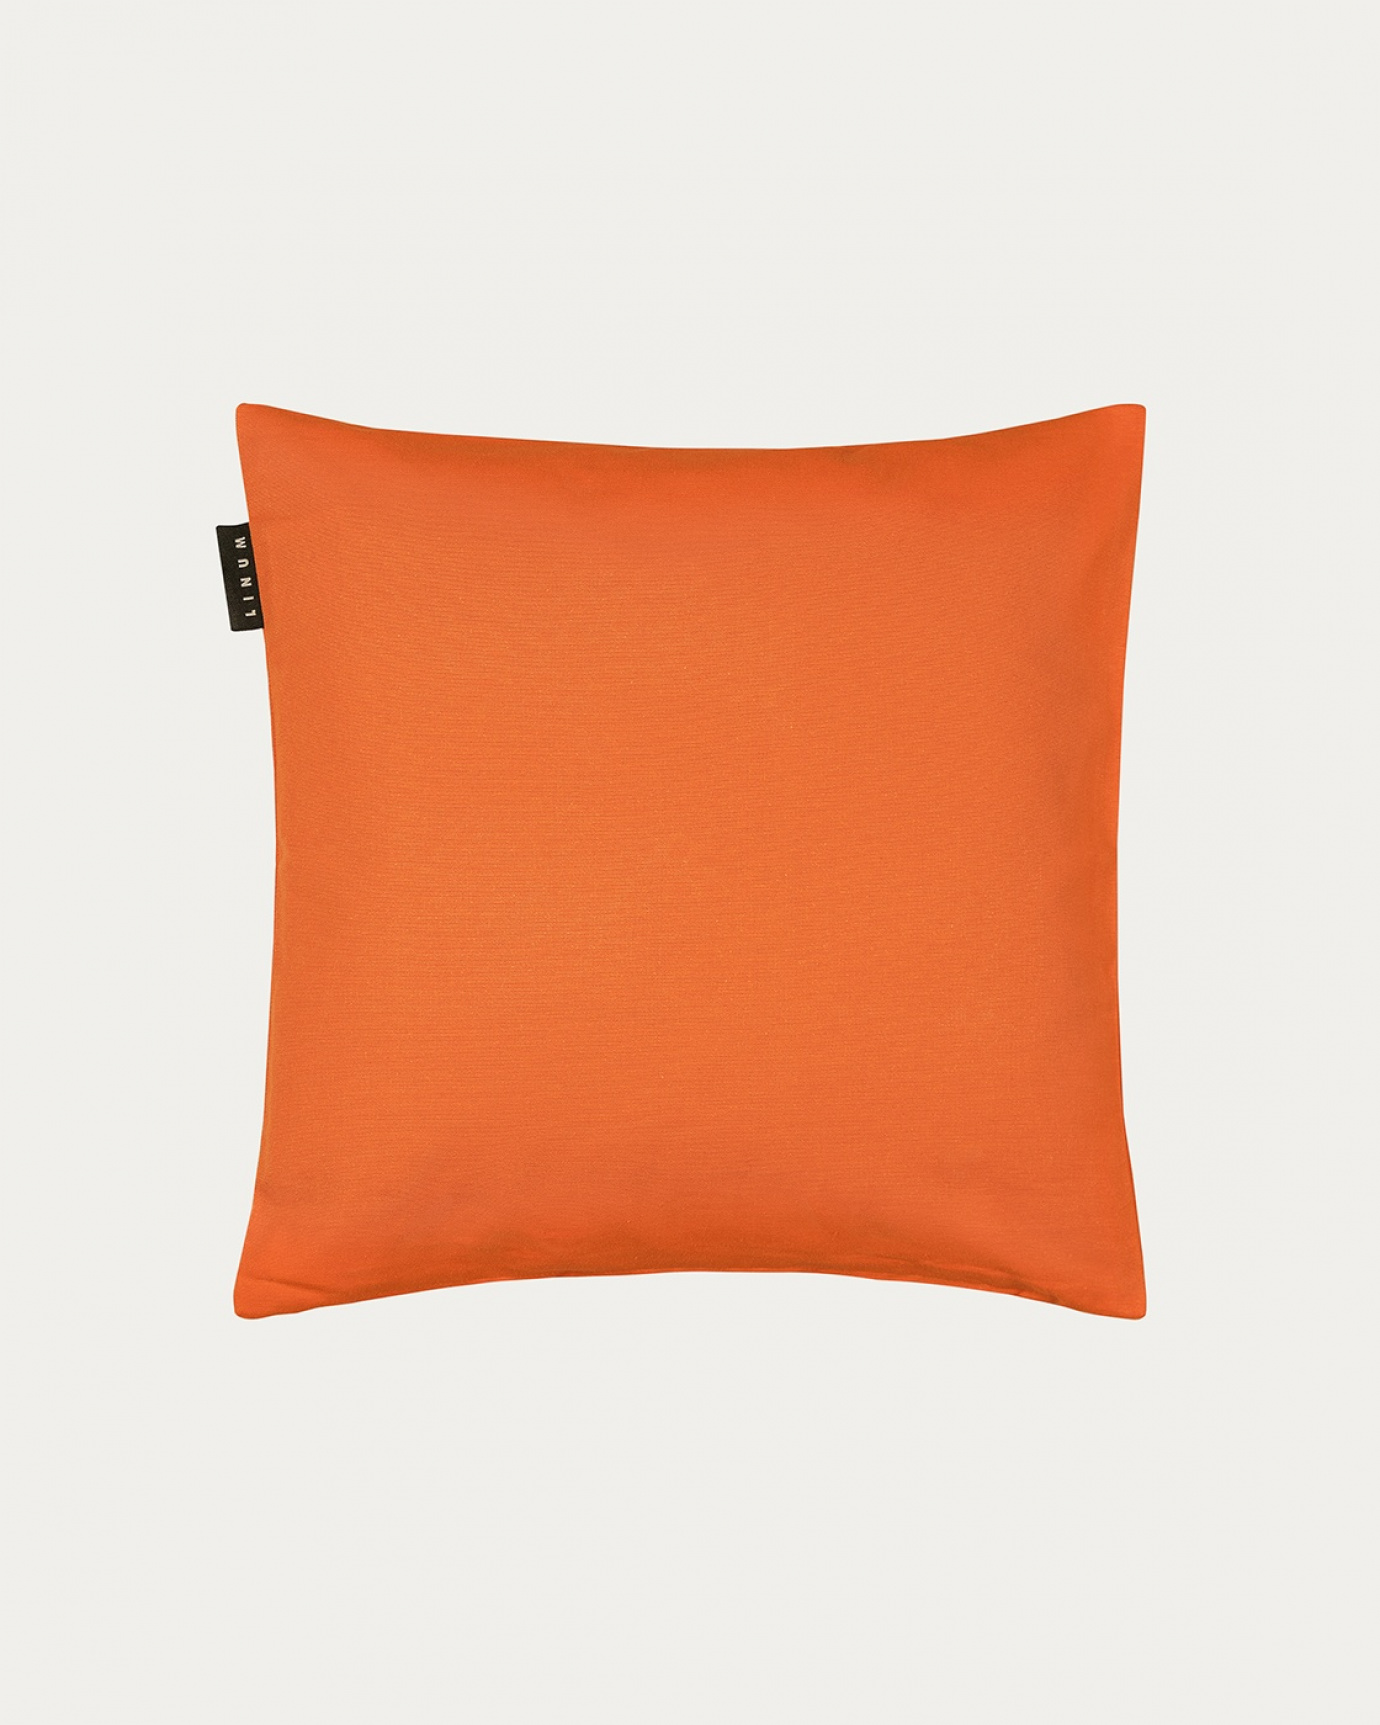 Produktbild orange ANNABELL kuddfodral av mjuk bomull från LINUM DESIGN. Storlek 40x40 cm.